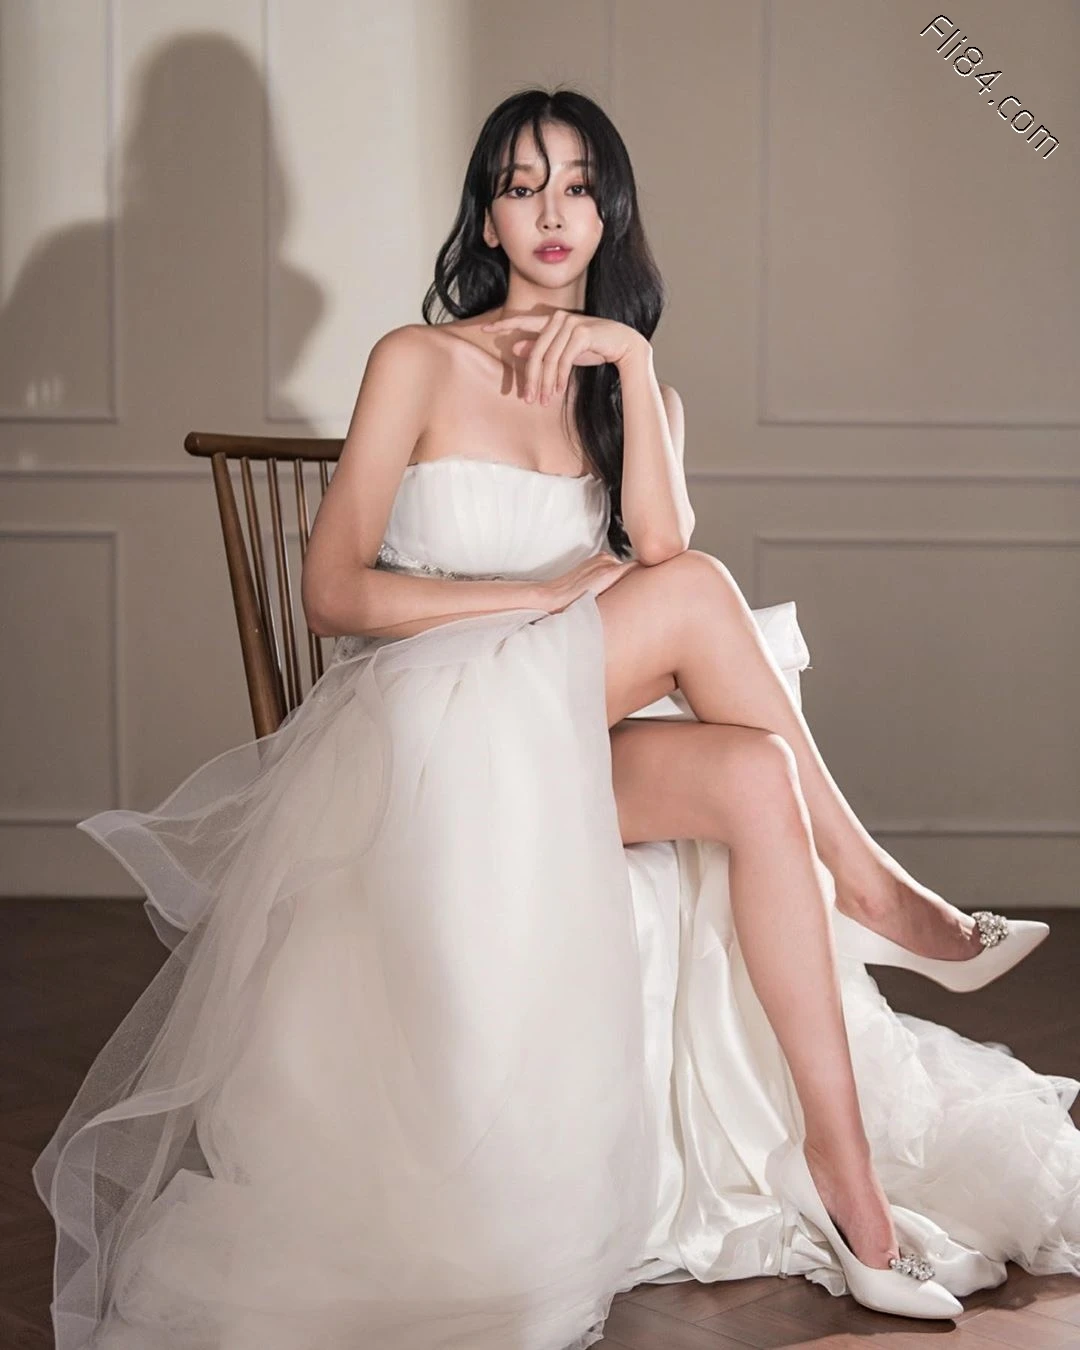 南韩内衣模特@Audrey 性感比基尼大秀美胸 - 全文 美女写真 热图44